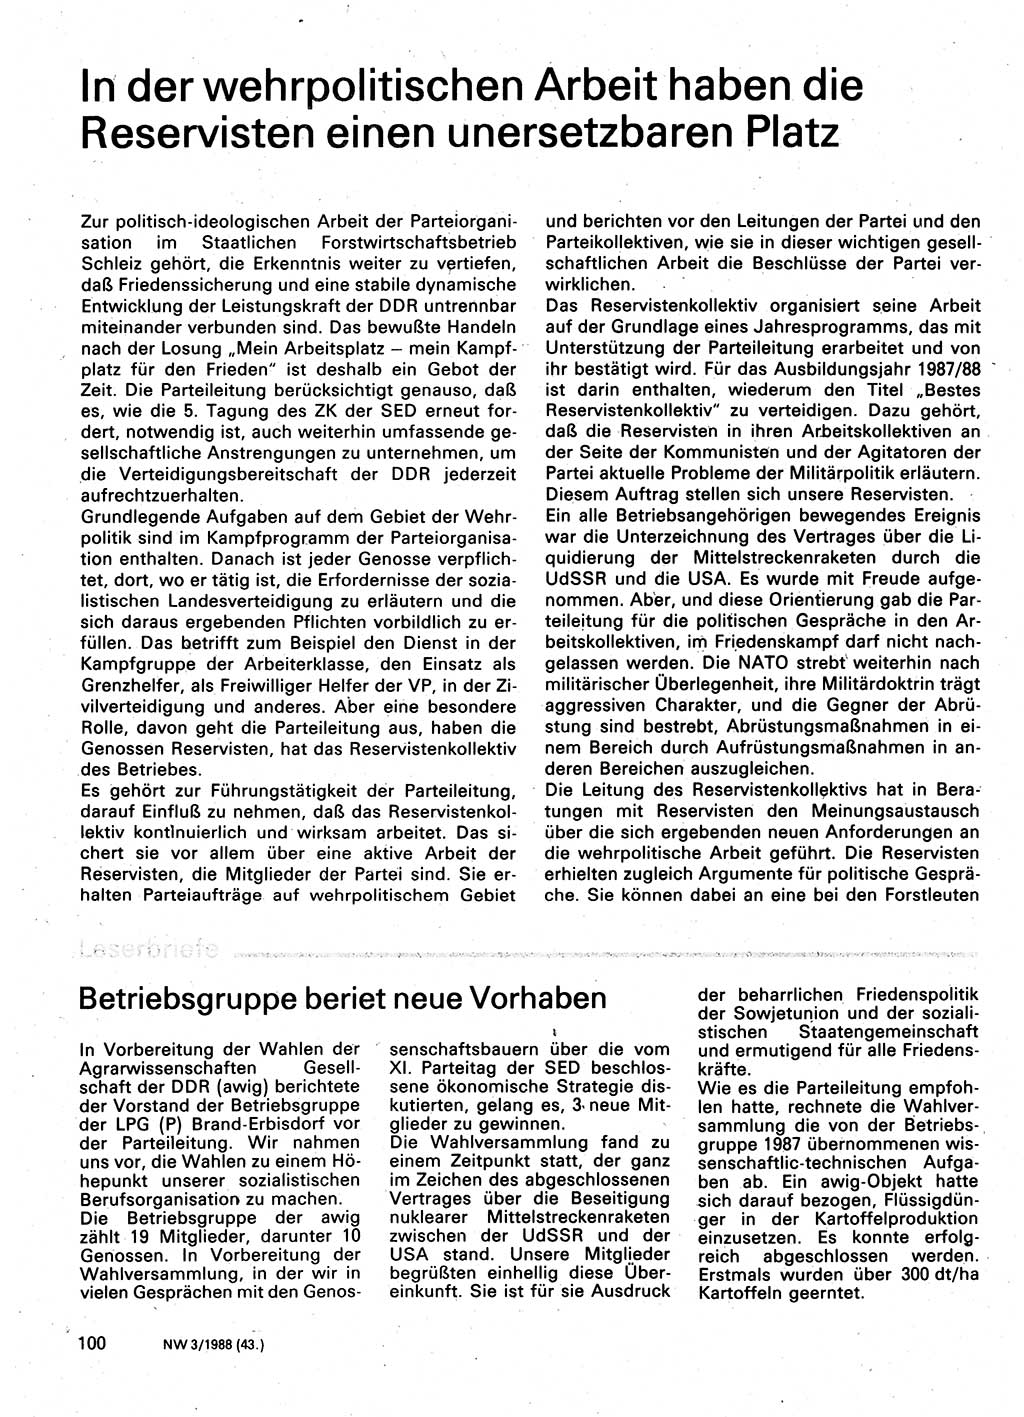 Neuer Weg (NW), Organ des Zentralkomitees (ZK) der SED (Sozialistische Einheitspartei Deutschlands) für Fragen des Parteilebens, 43. Jahrgang [Deutsche Demokratische Republik (DDR)] 1988, Seite 100 (NW ZK SED DDR 1988, S. 100)